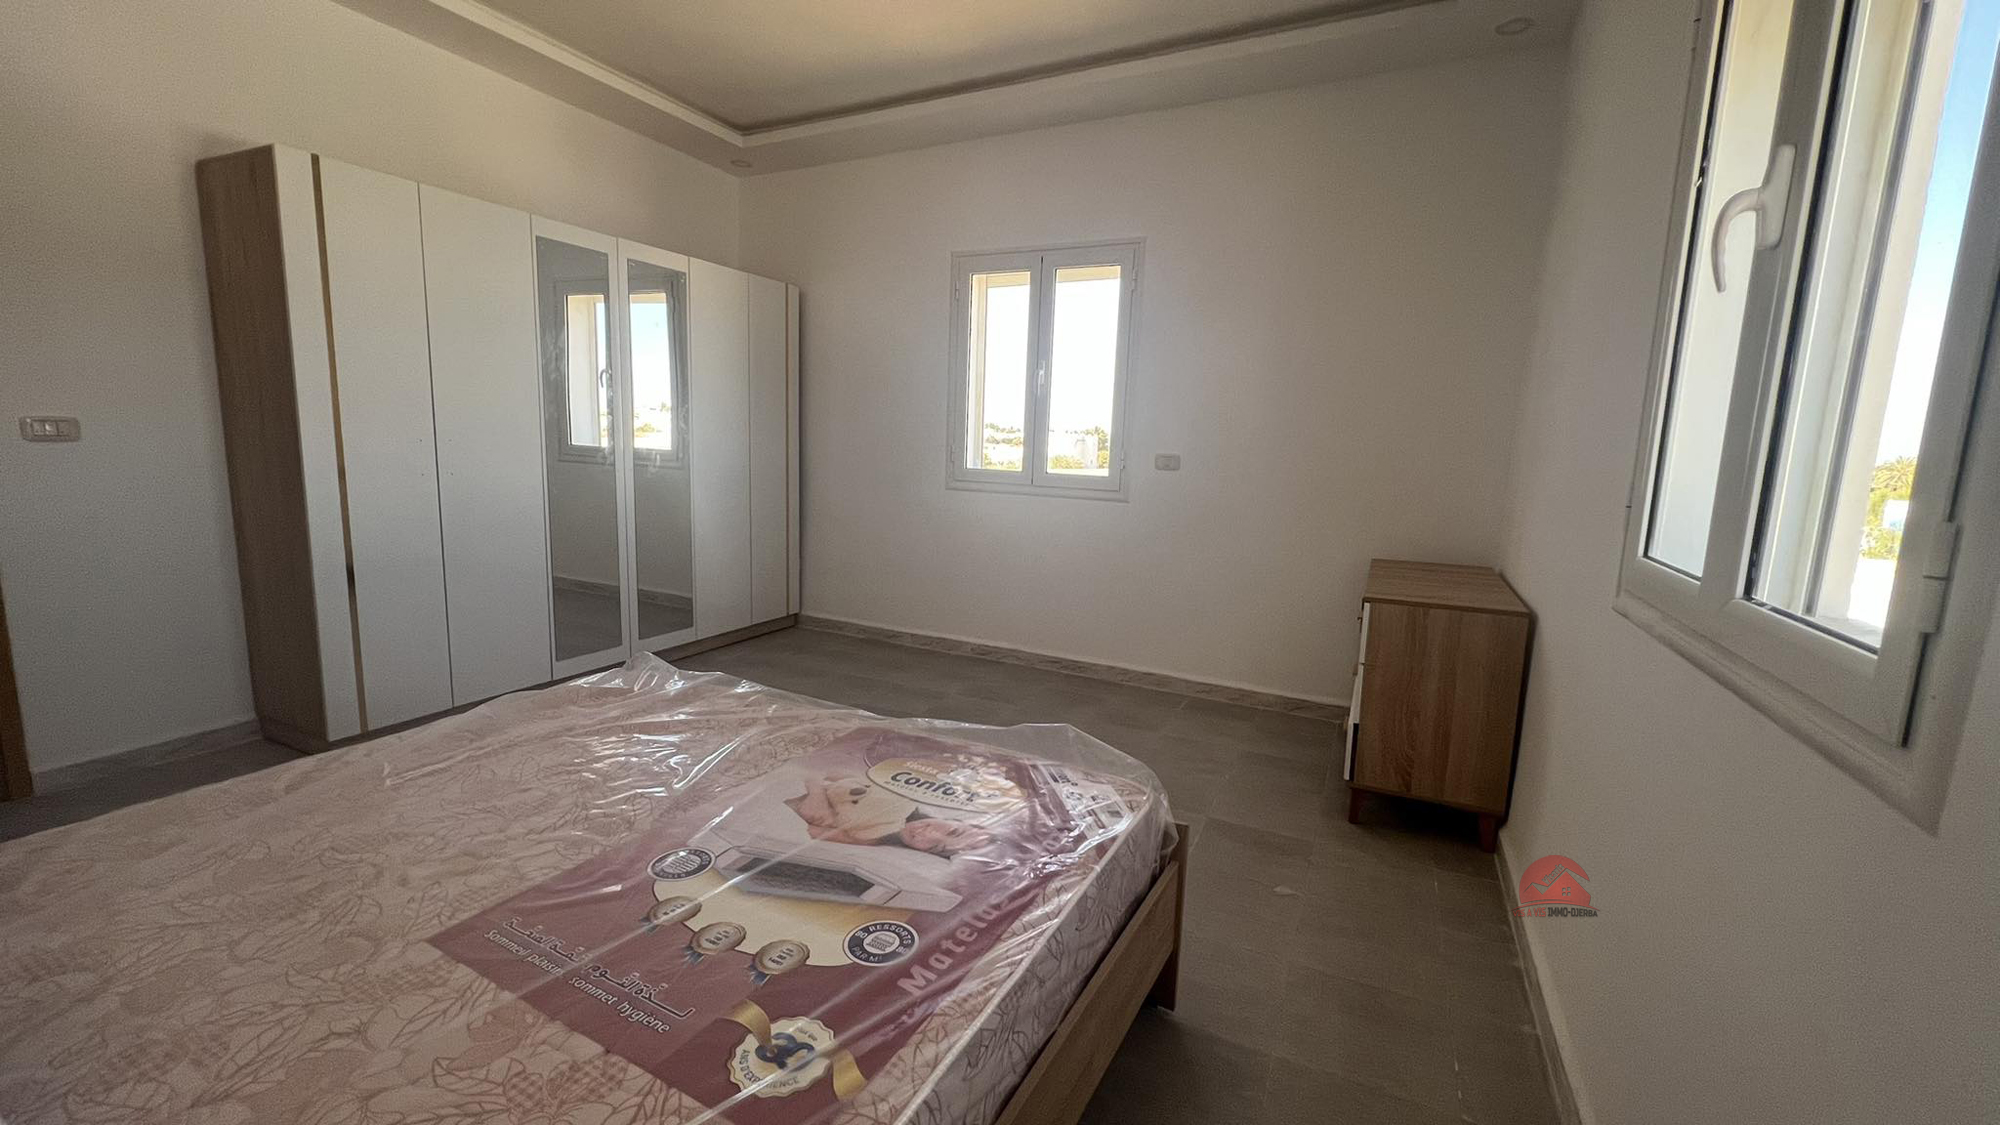 Djerba - Midoun Zone Hoteliere Location Appart. 3 pices Appartement a la zone touristique djerba ref l726